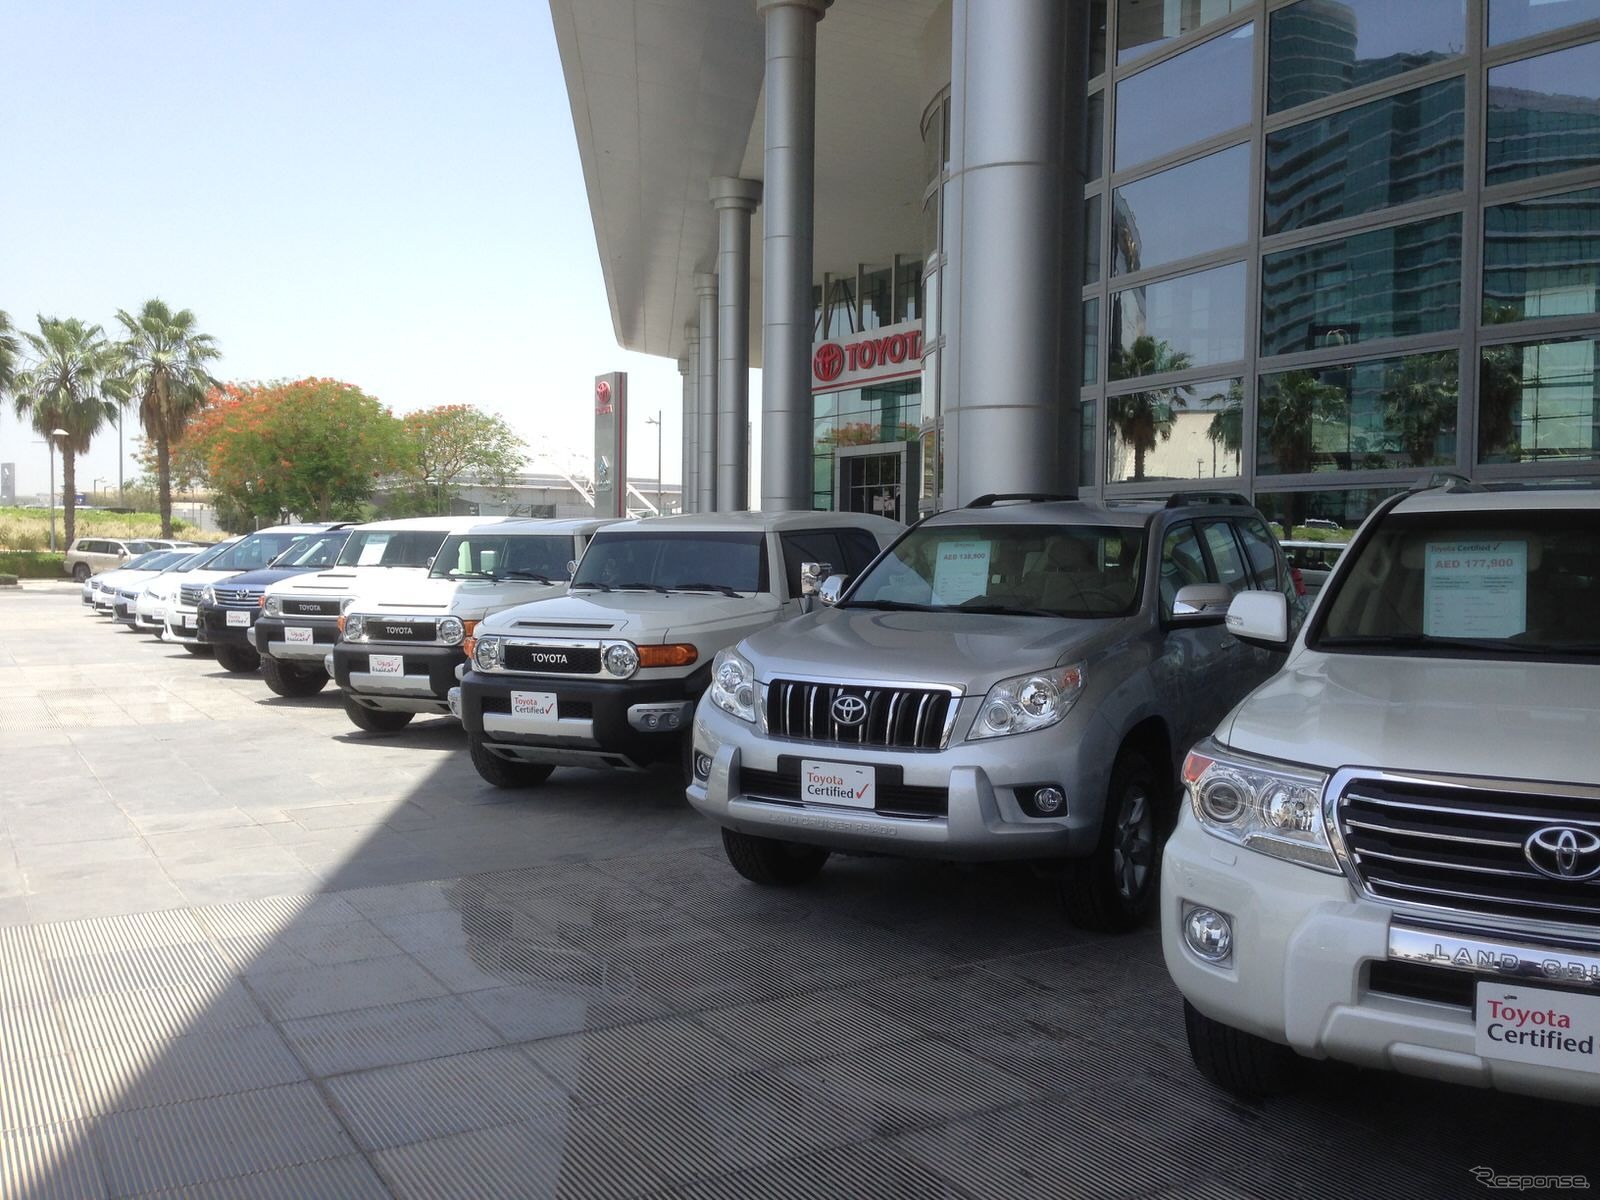 「Al-Futtaim」の経営するトヨタのショールーム